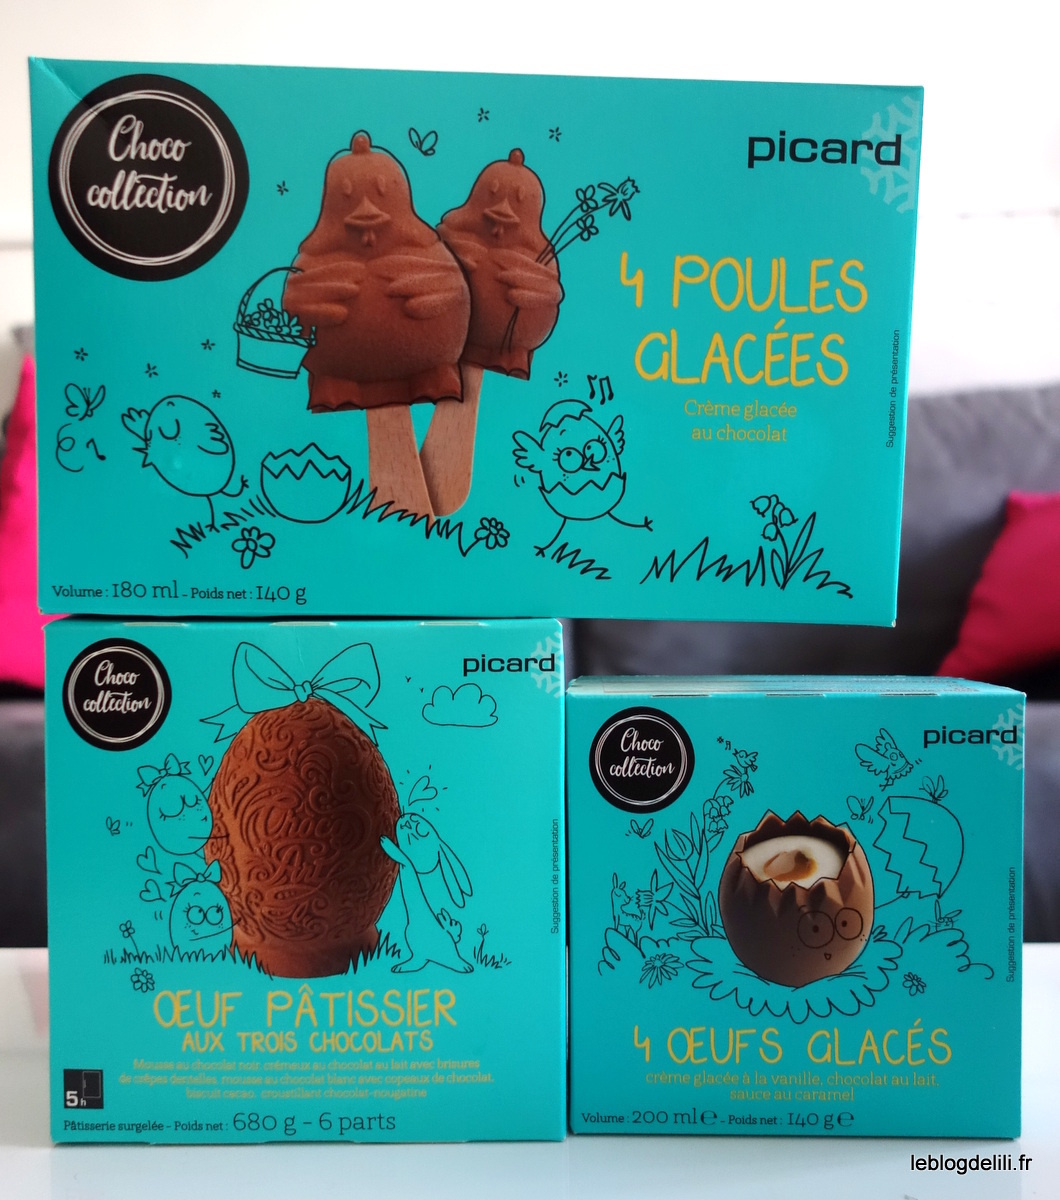 Le chocolat dans tous ses états pour Pâques 2016 avec Picard